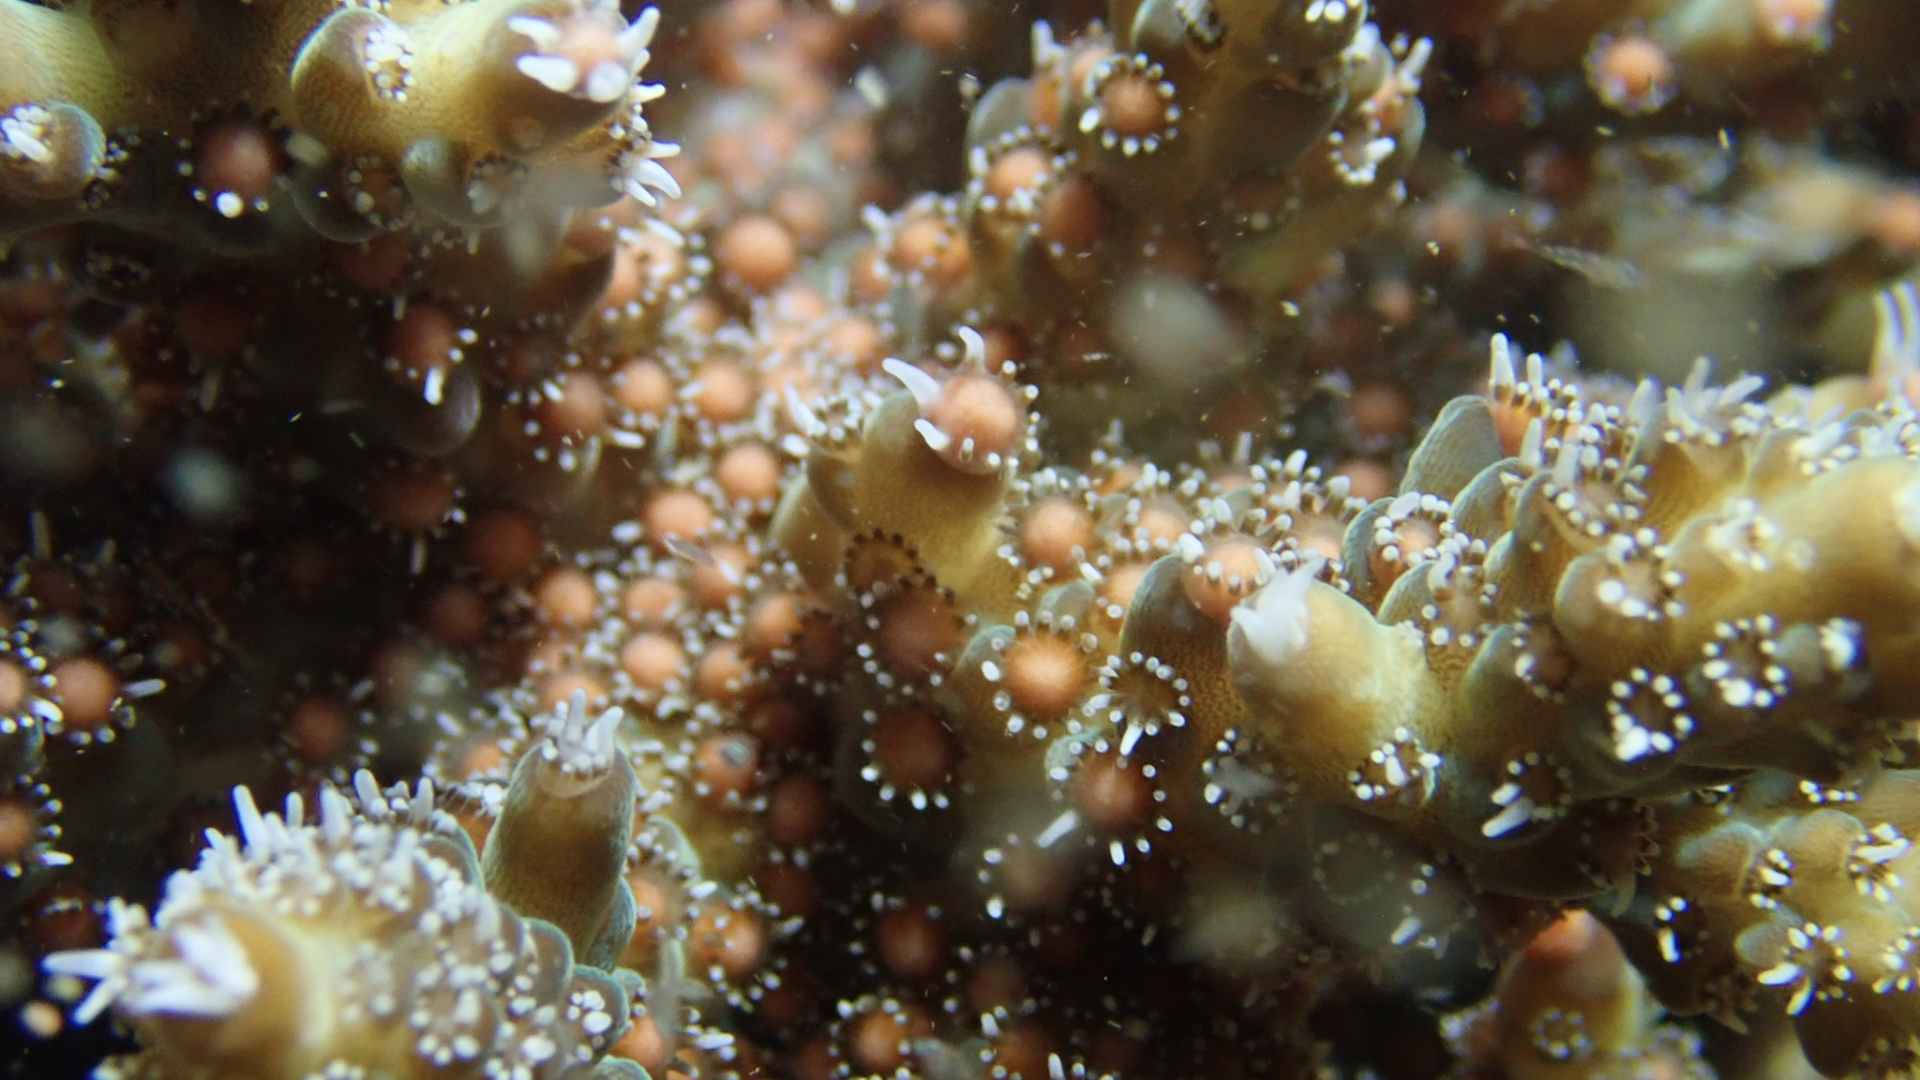 他们在海底“接生” ——全国首场野生珊瑚产卵水下直播全记录 